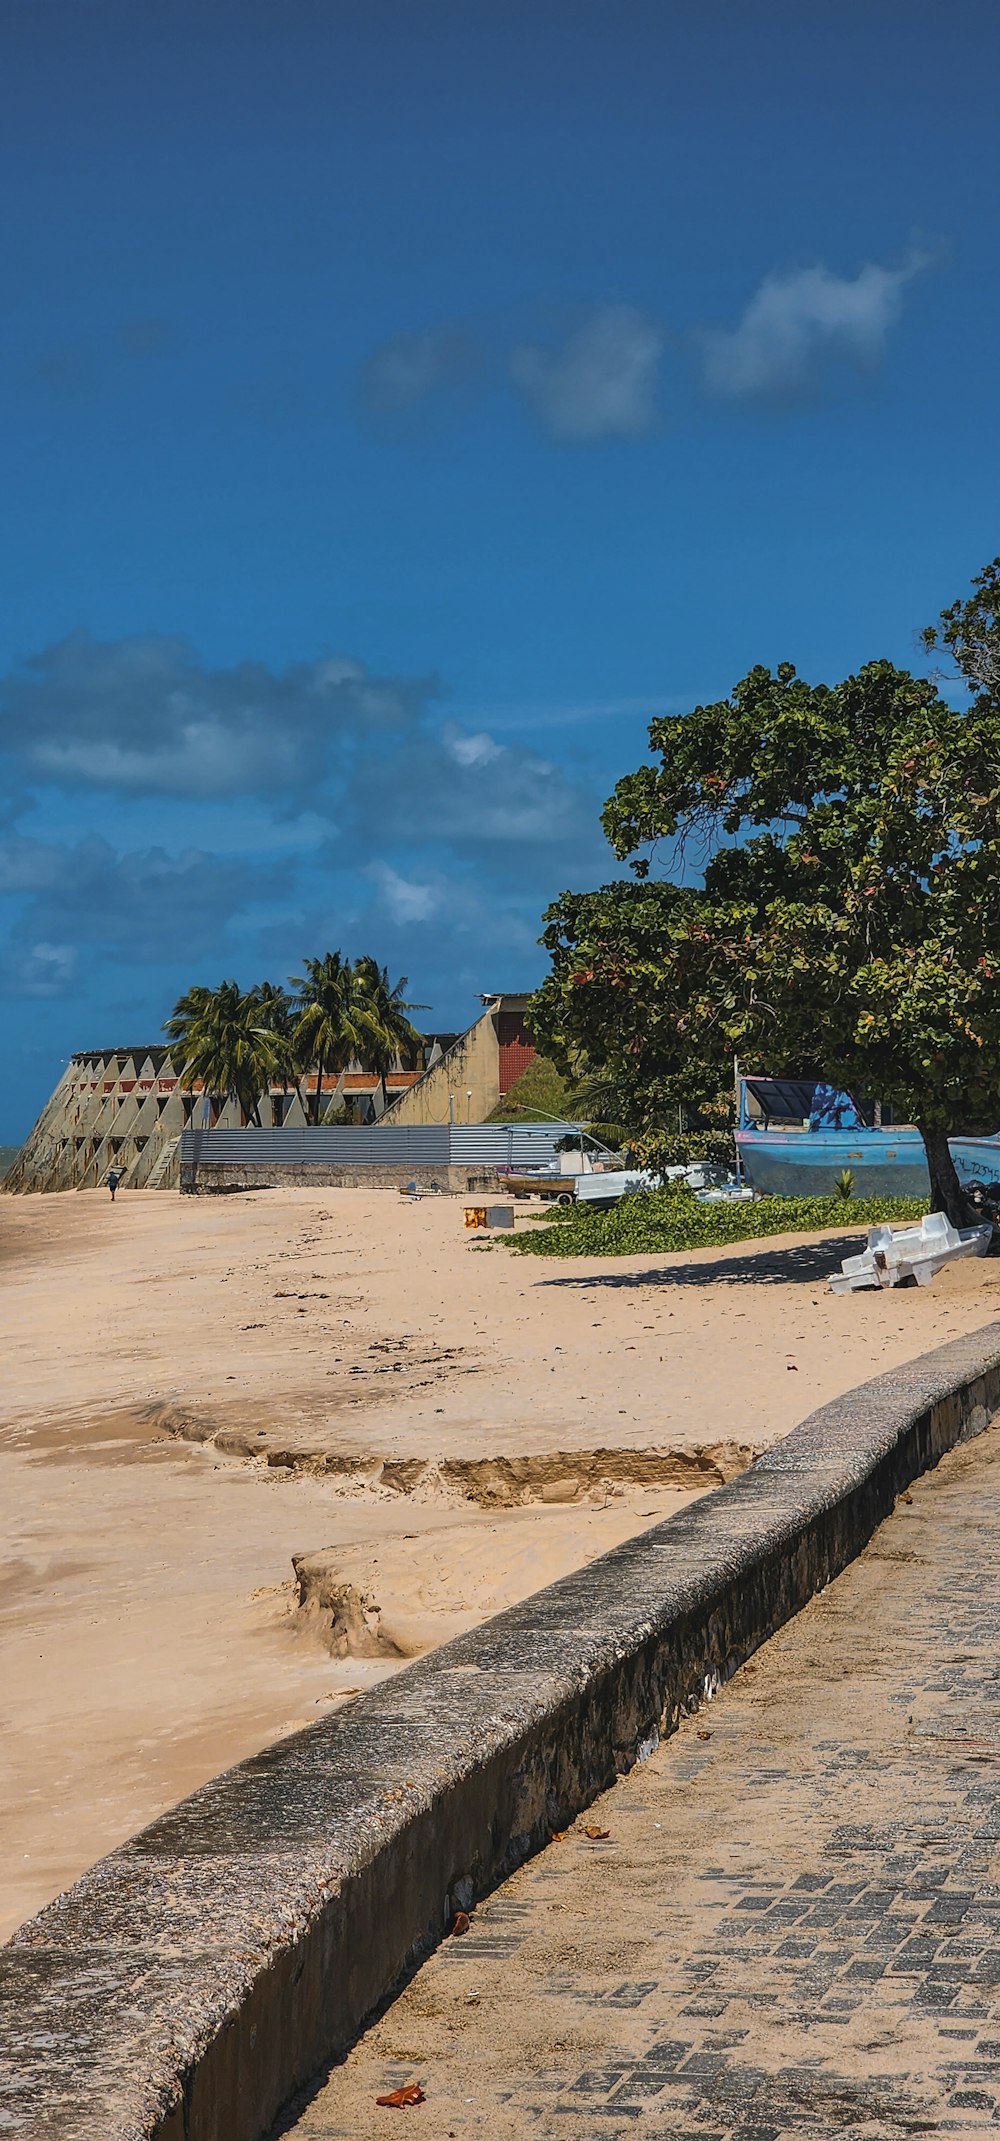 나무와 건물이 배경으로 있는 해변